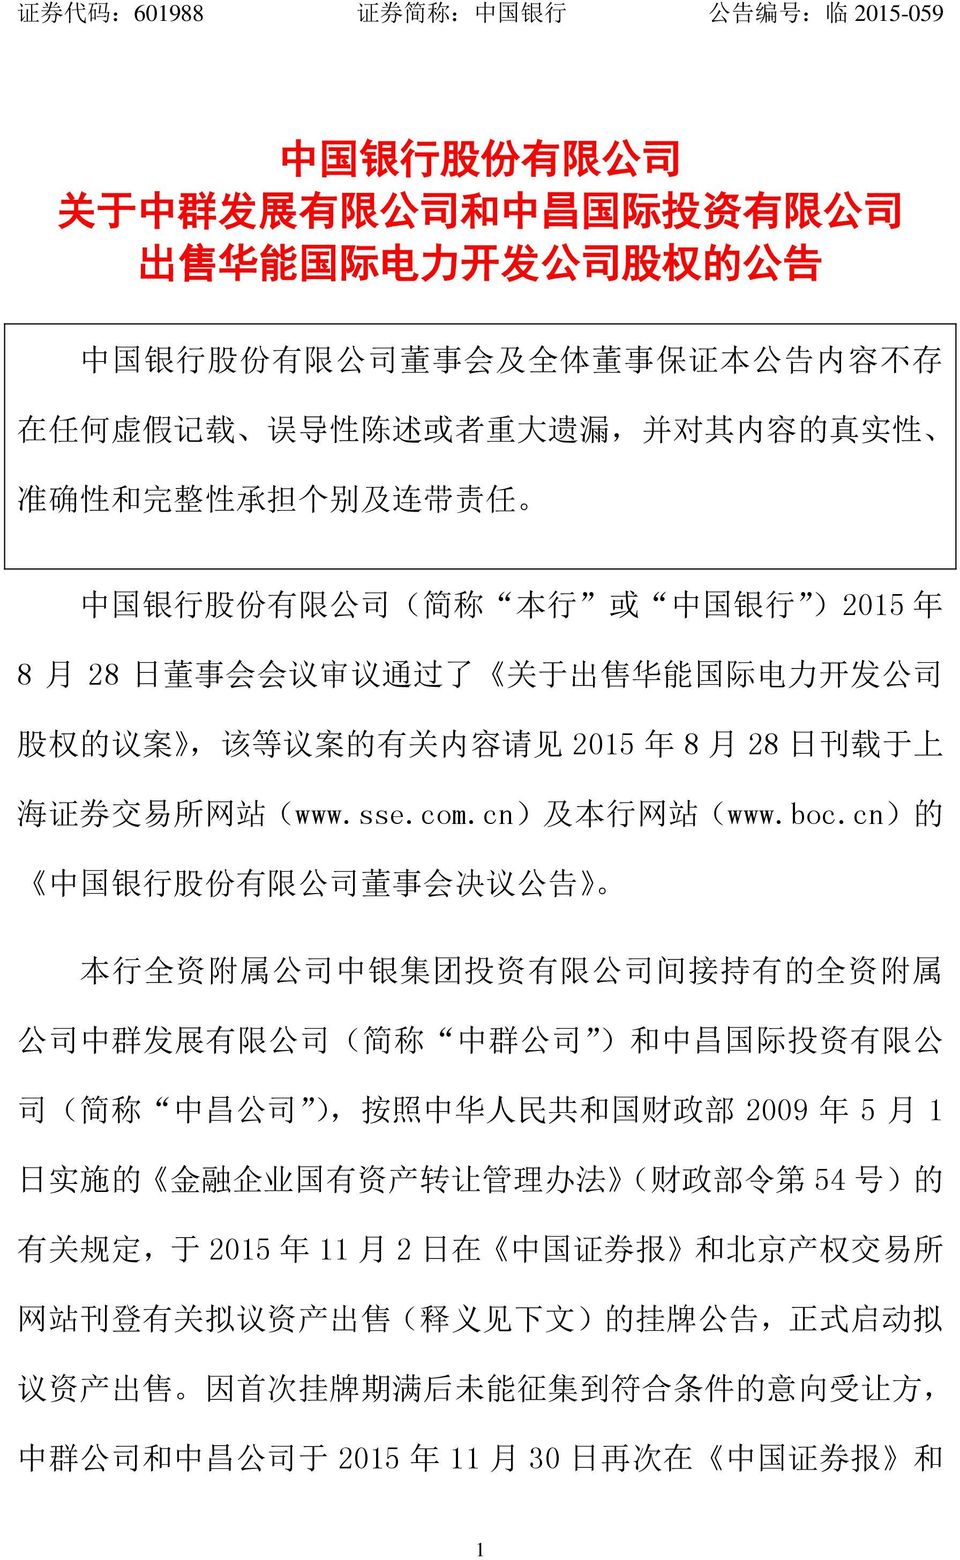 权 的 议 案, 该 等 议 案 的 有 关 内 容 请 见 2015 年 8 月 28 日 刊 载 于 上 海 证 券 交 易 所 网 站 (www.sse.com.cn) 及 本 行 网 站 (www.boc.